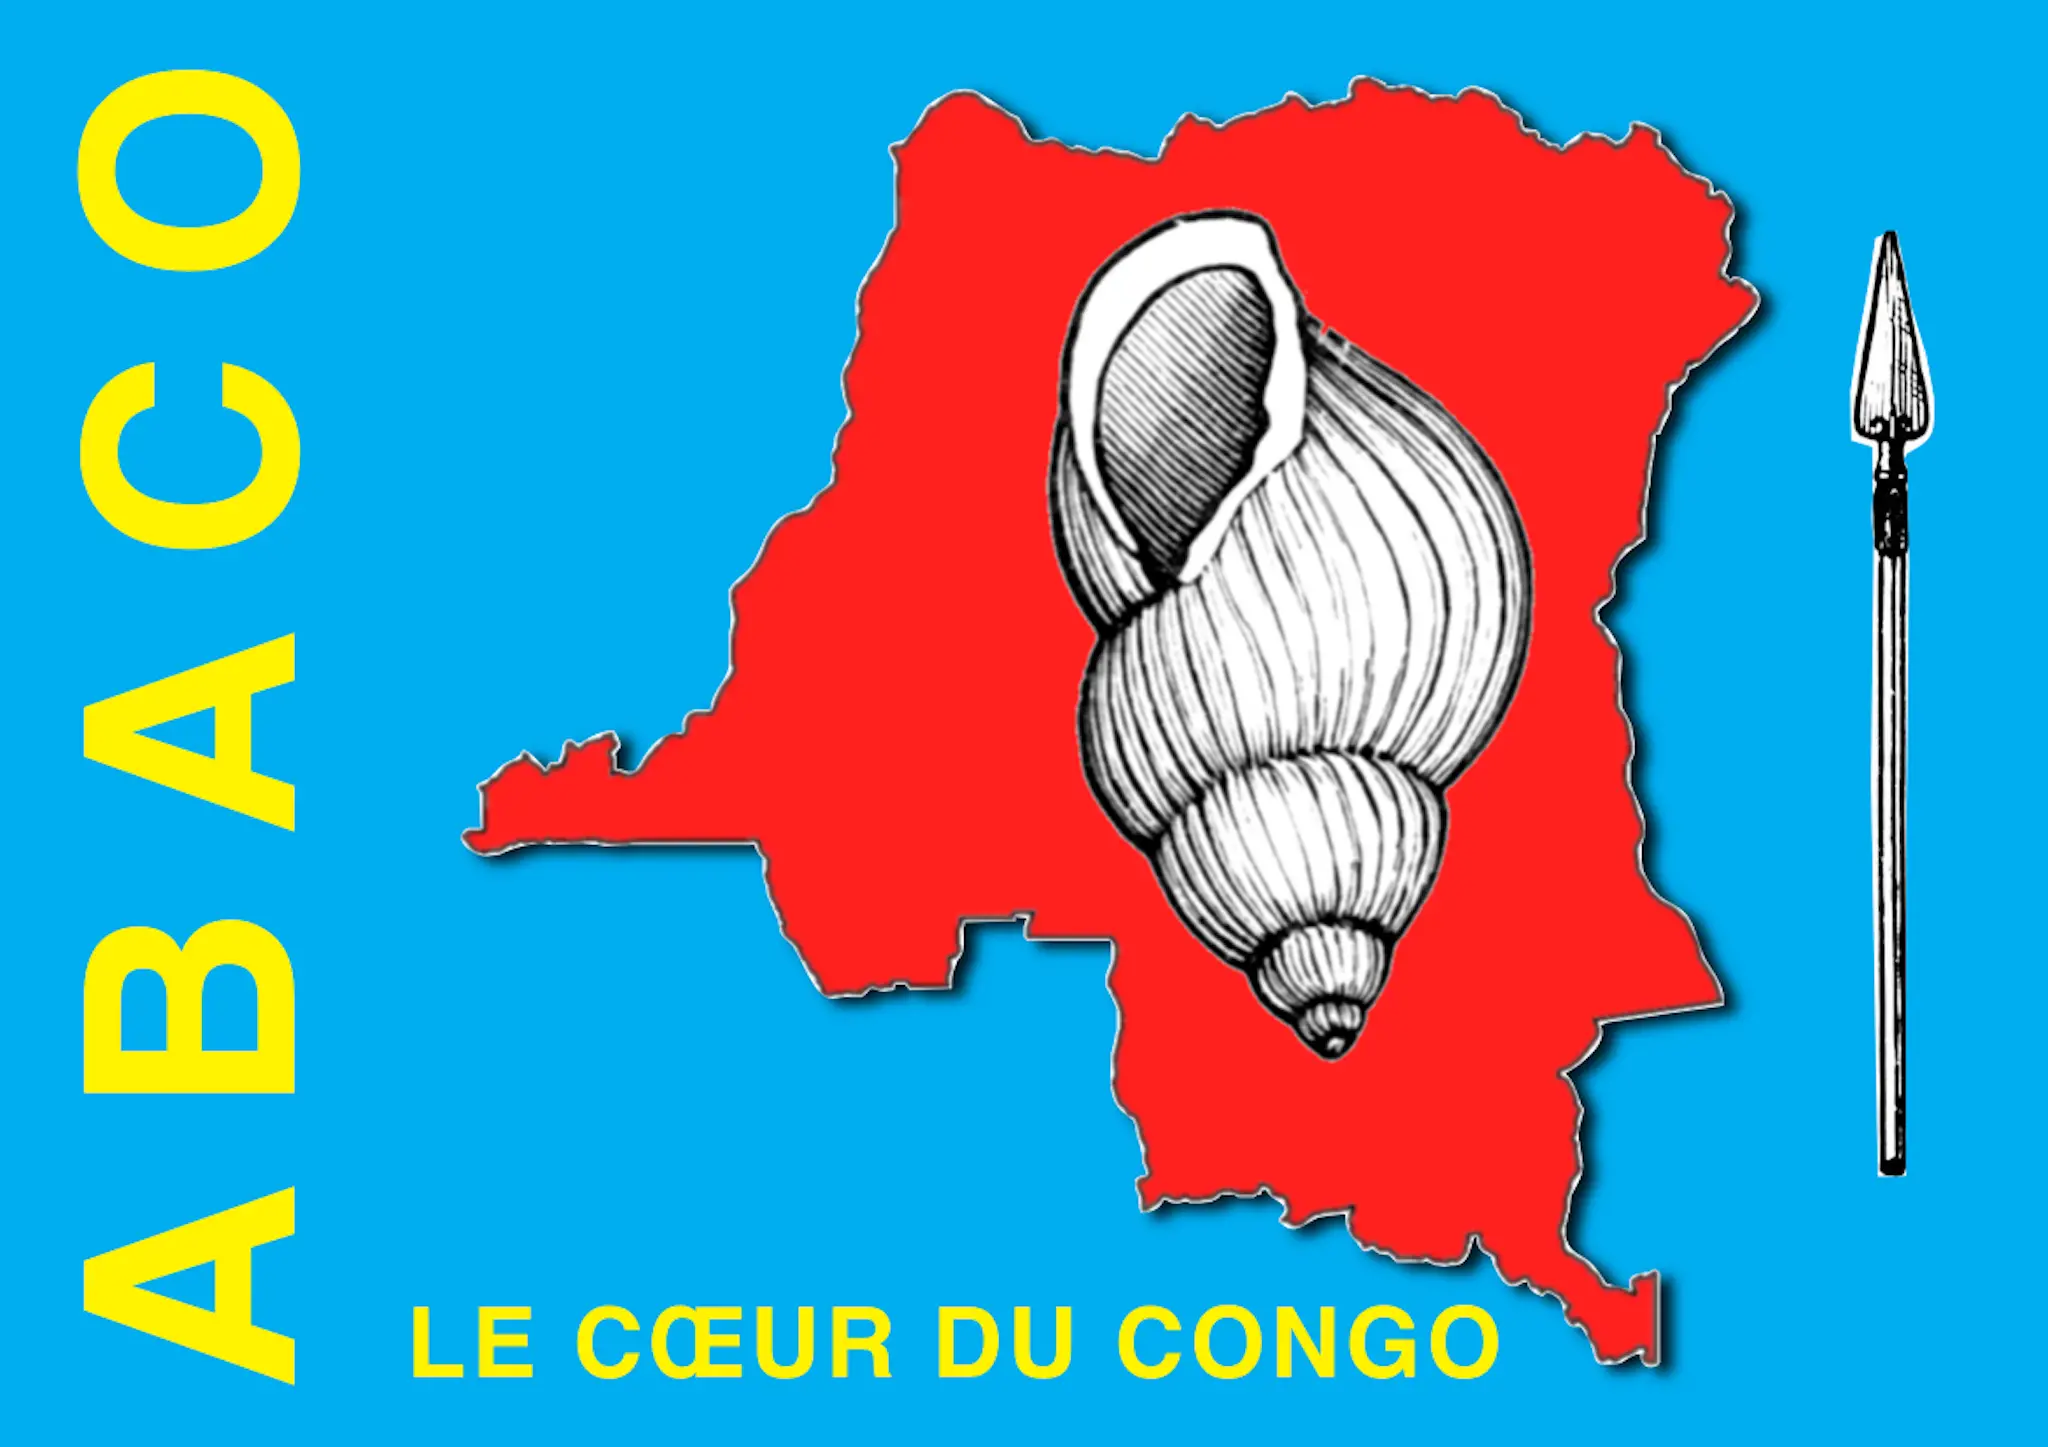 Réaction de la direction Europe de l’ABACO aux vœux du président intérimaire de la RDC